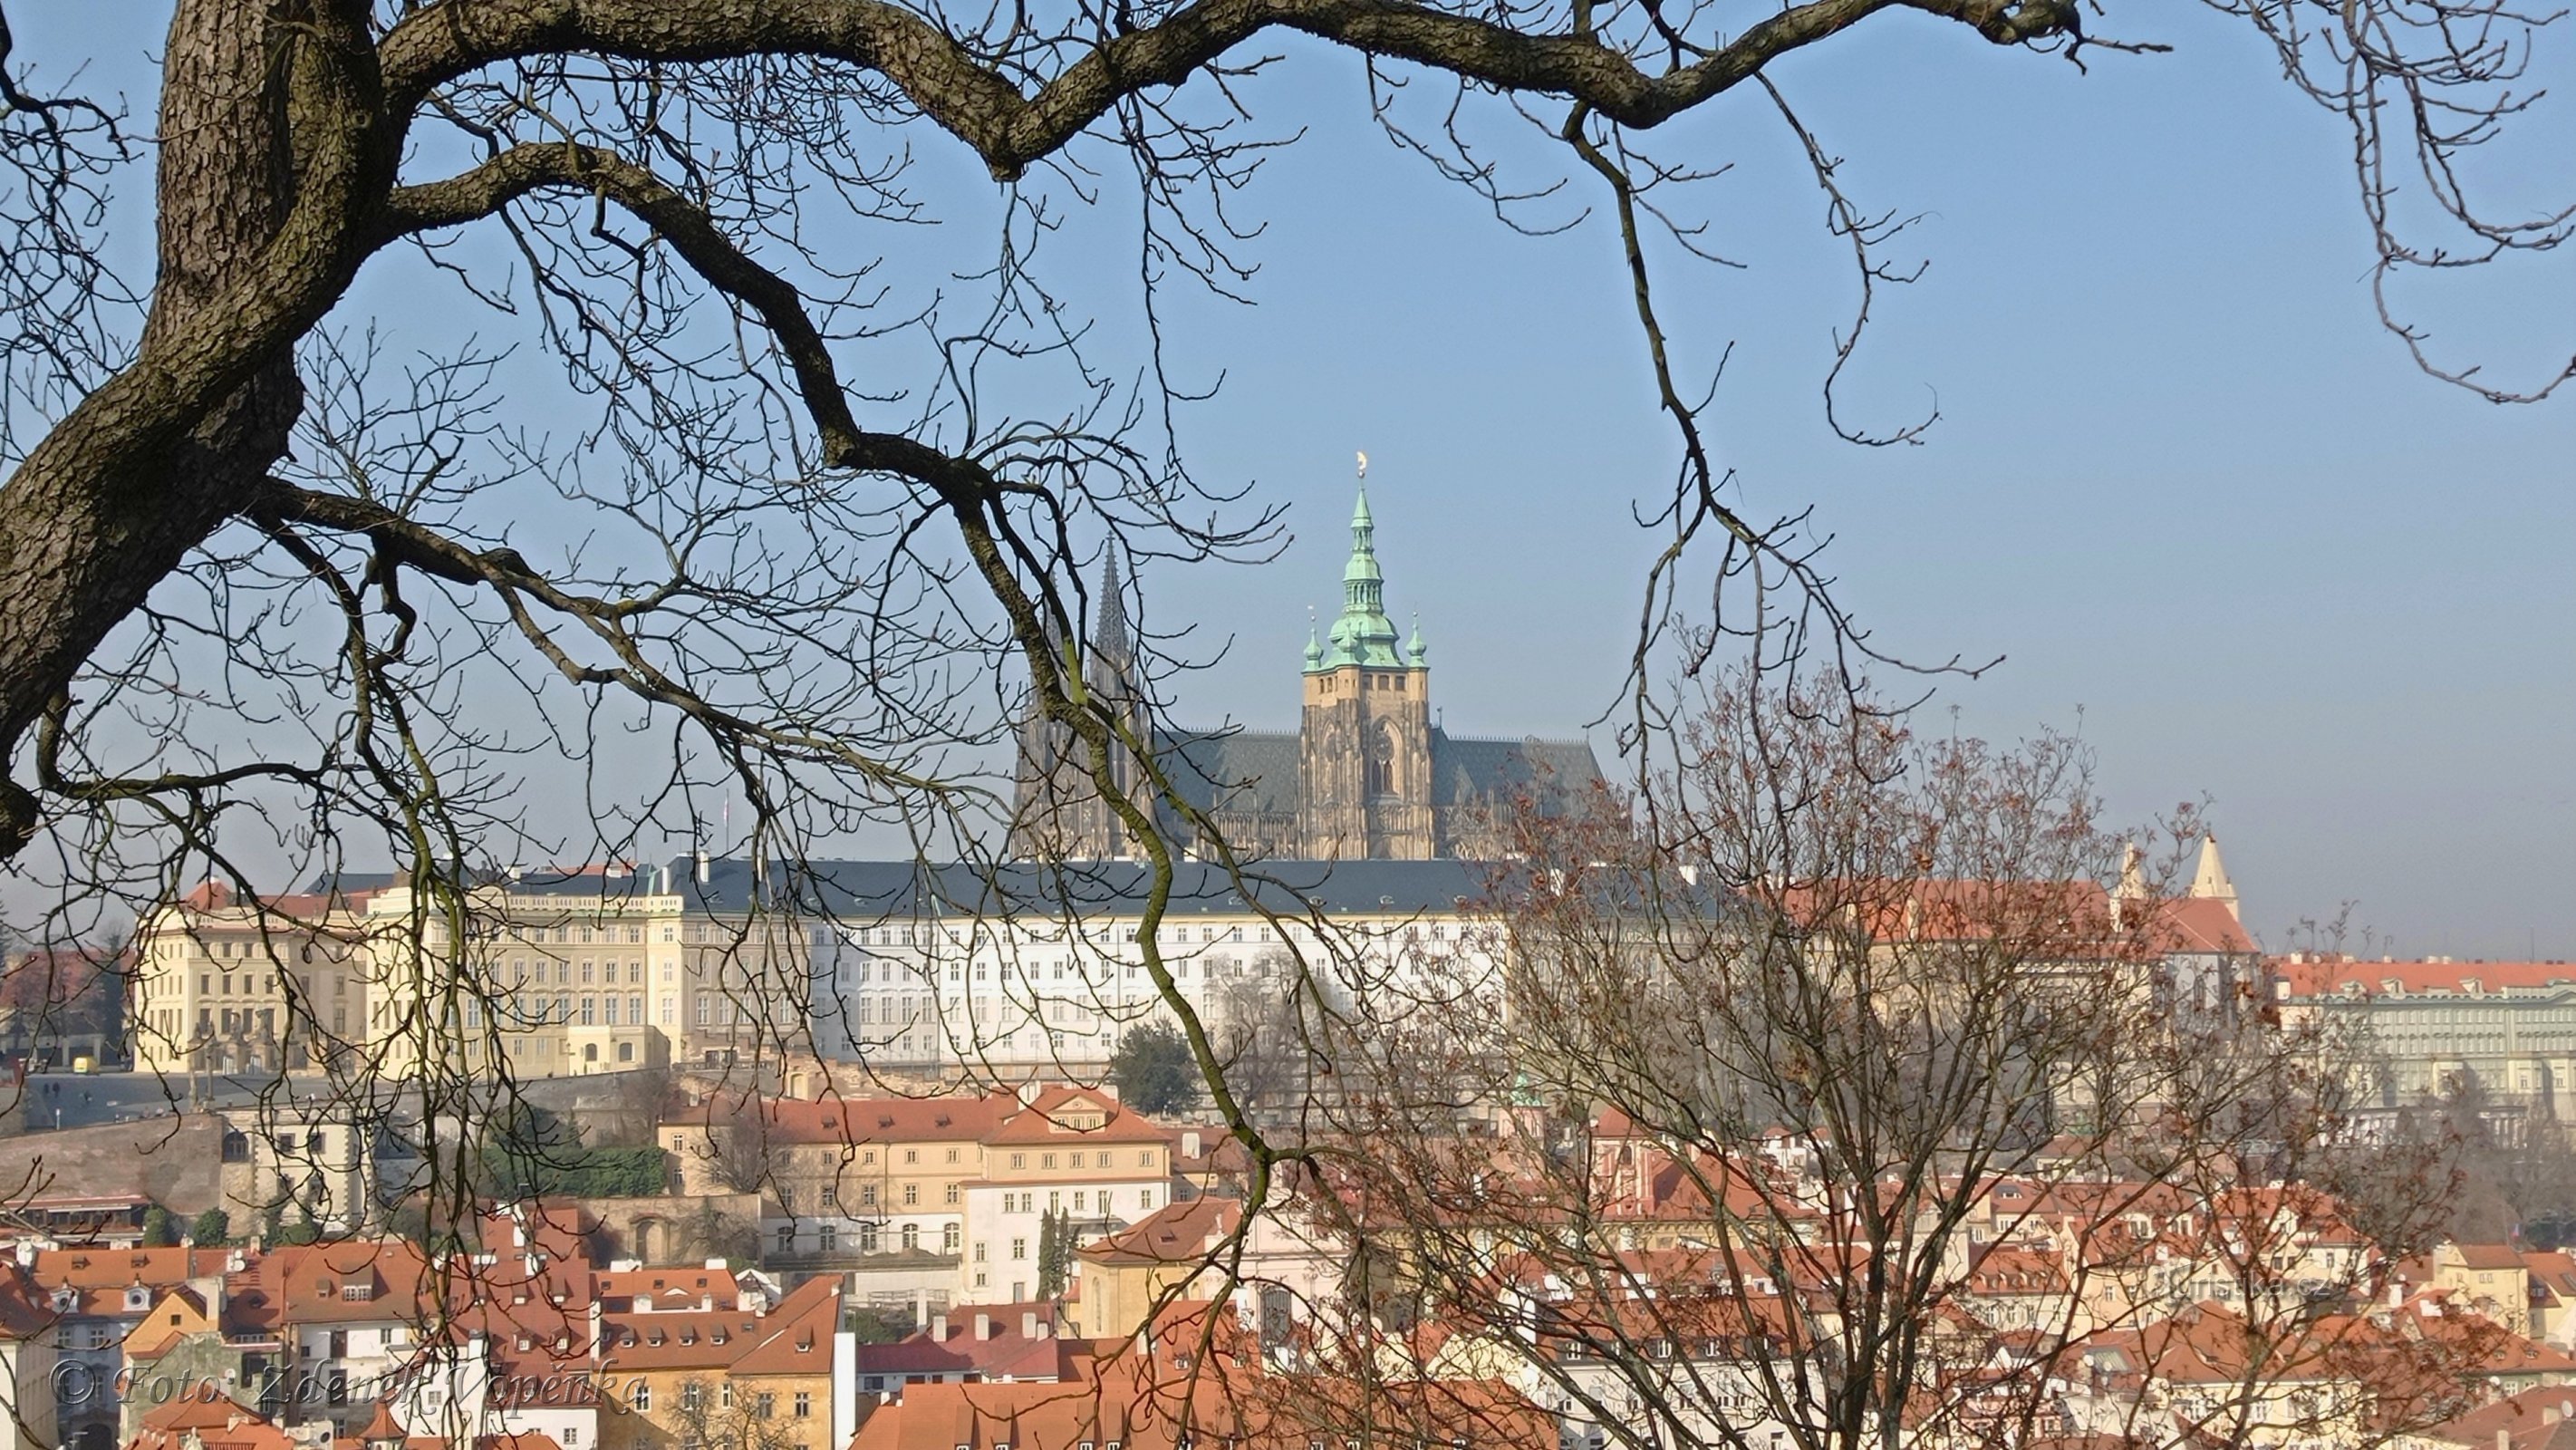 ロブコヴィツカー庭園から見たプラハ城。